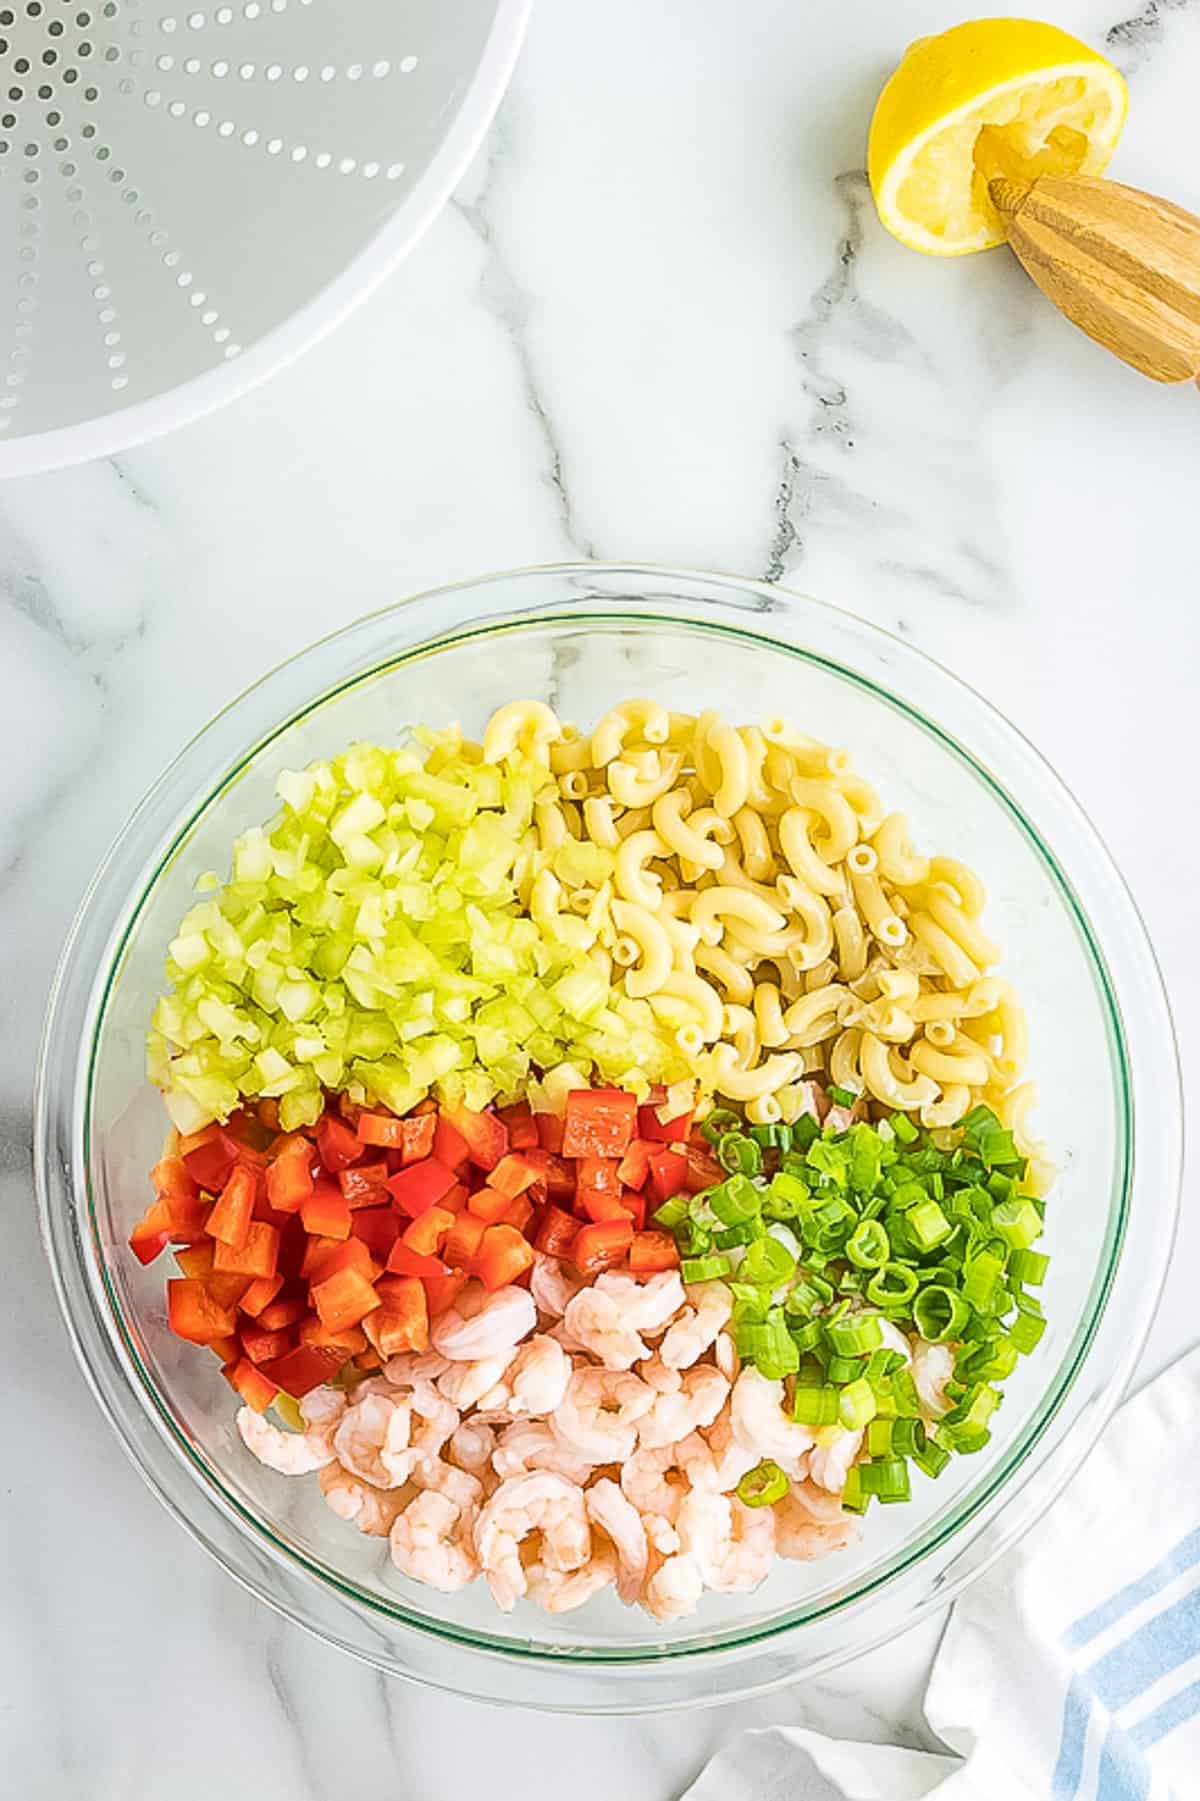 Ingredients for shrimp pasta salad in bowl